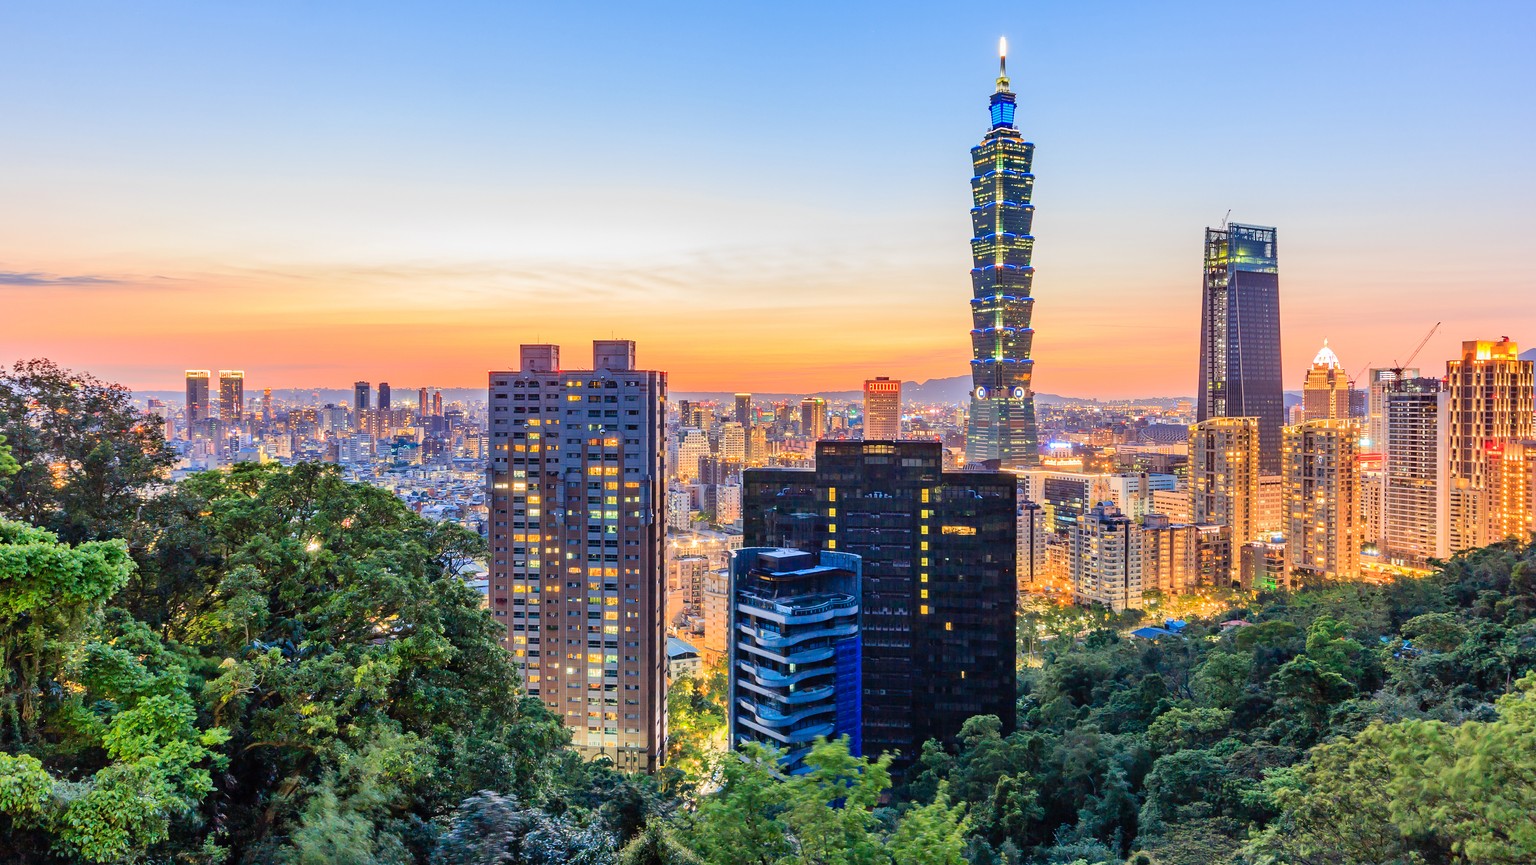 Viele Häuser, aber auch viel Grün: Taipeh mit dem berühmten Wolkenkratzer Taipei 101.